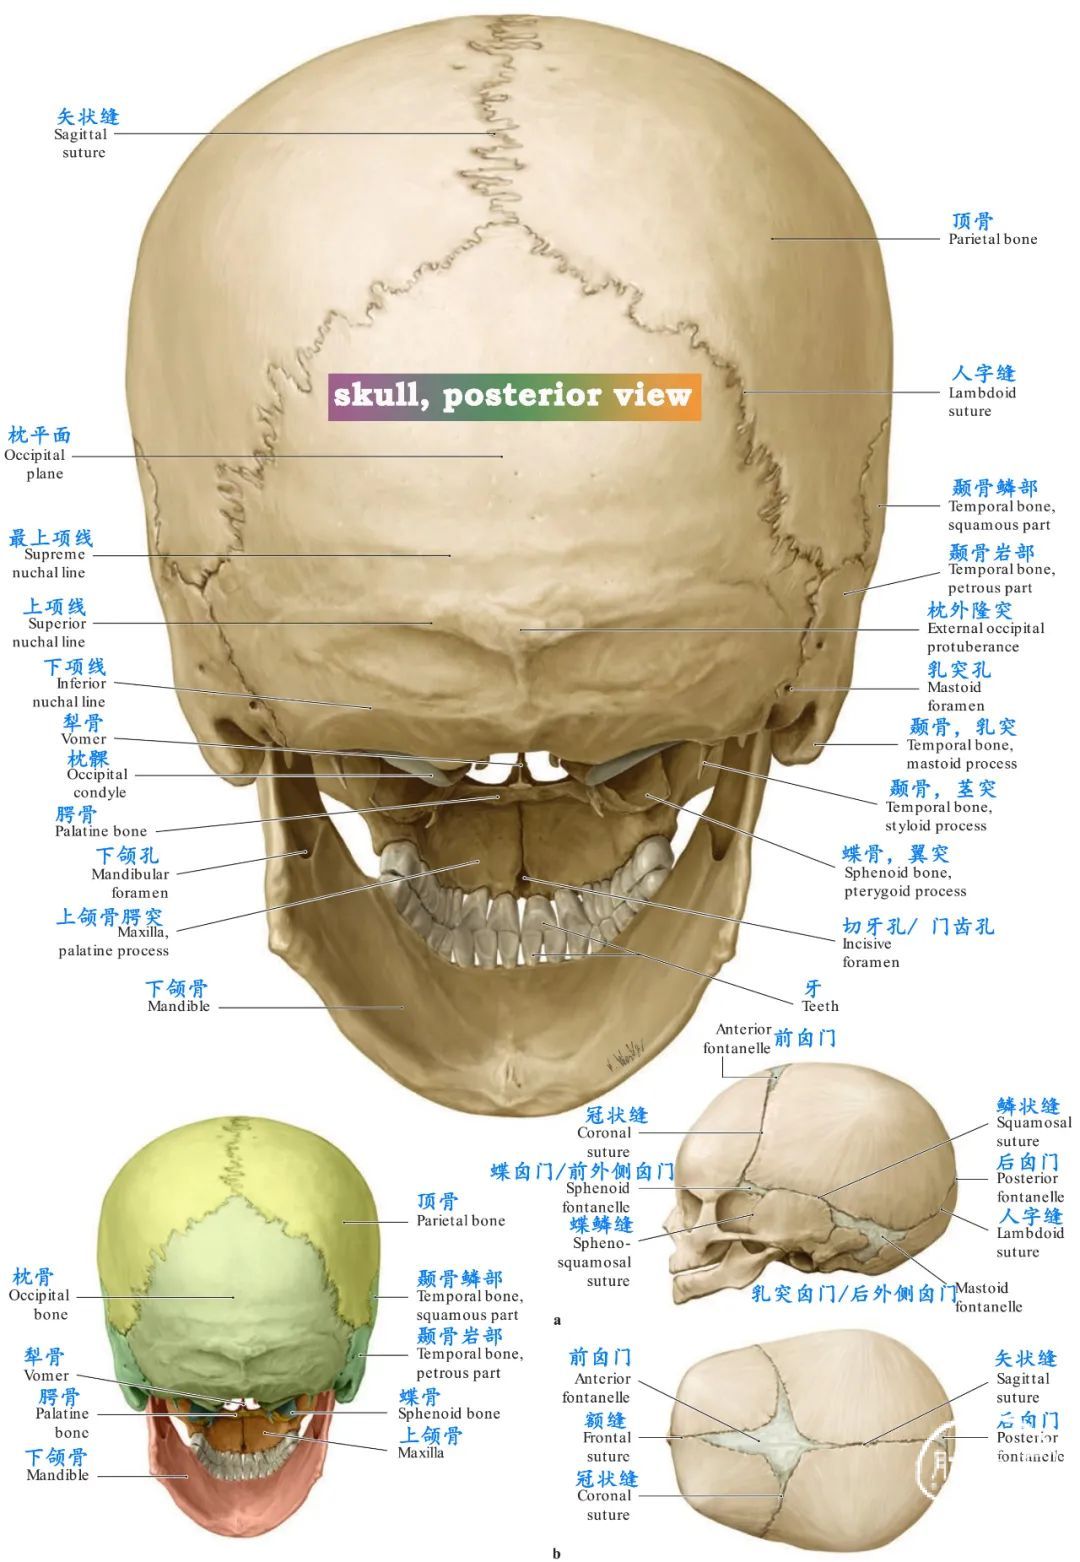 颅底、硬脑膜和脑神经-局部解剖学图谱-医学